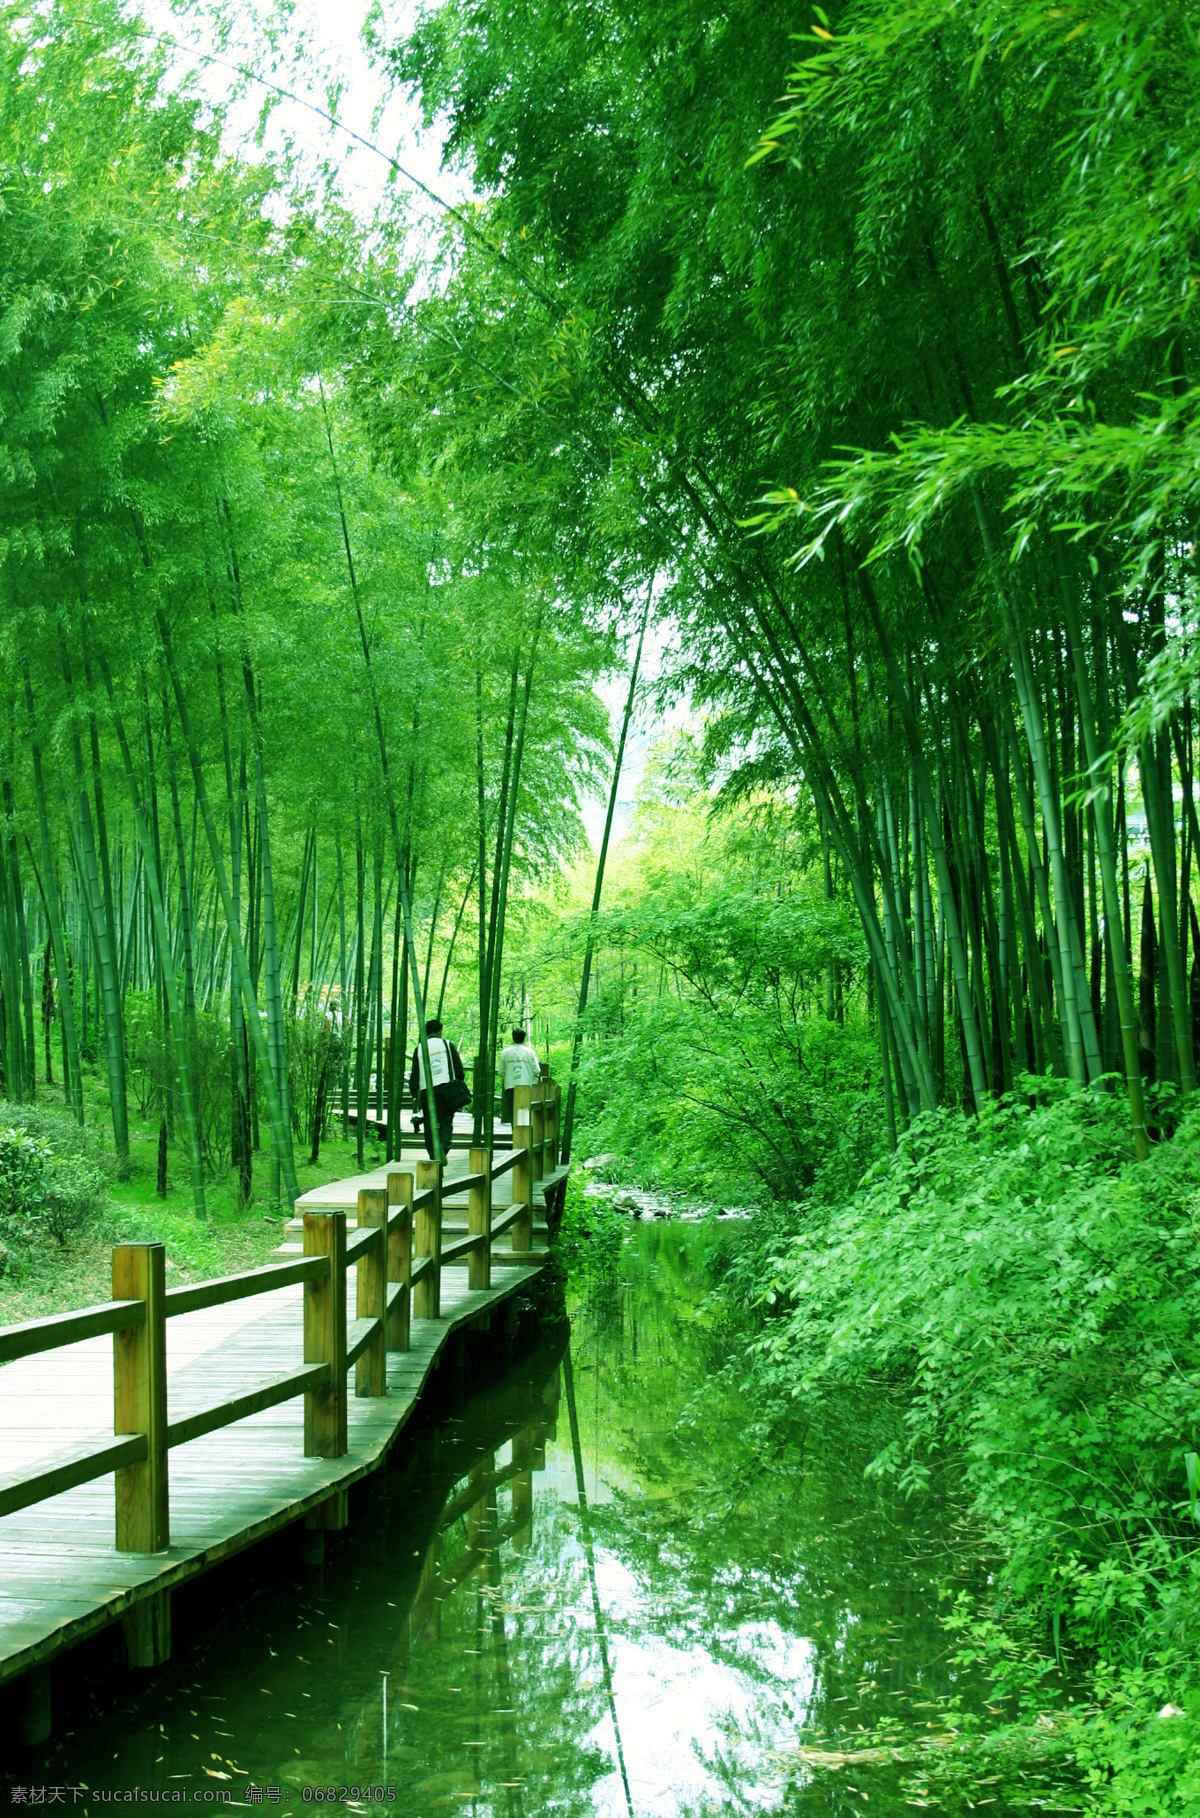 竹海 自然 绿树 青山 绿竹 木桥 游客 旅游摄影 自然风景 摄影图库